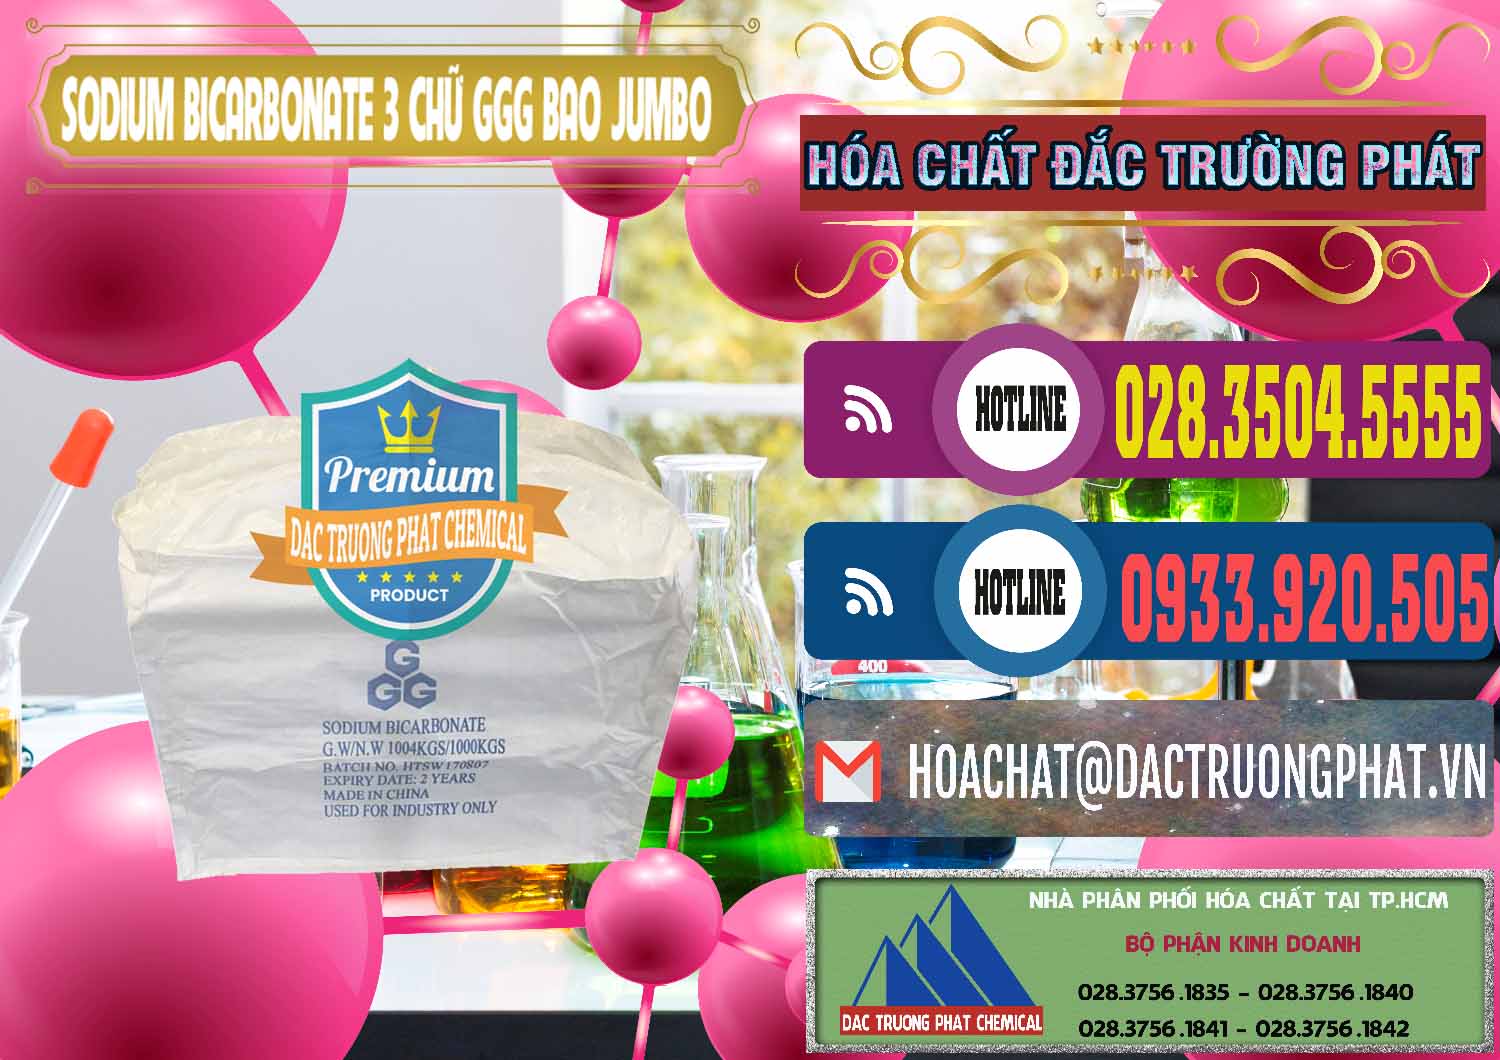 Chuyên nhập khẩu & bán Sodium Bicarbonate – Bicar NaHCO3 Food Grade 3 Chữ GGG Bao Jumbo ( Bành ) Trung Quốc China - 0260 - Phân phối - cung cấp hóa chất tại TP.HCM - muabanhoachat.com.vn